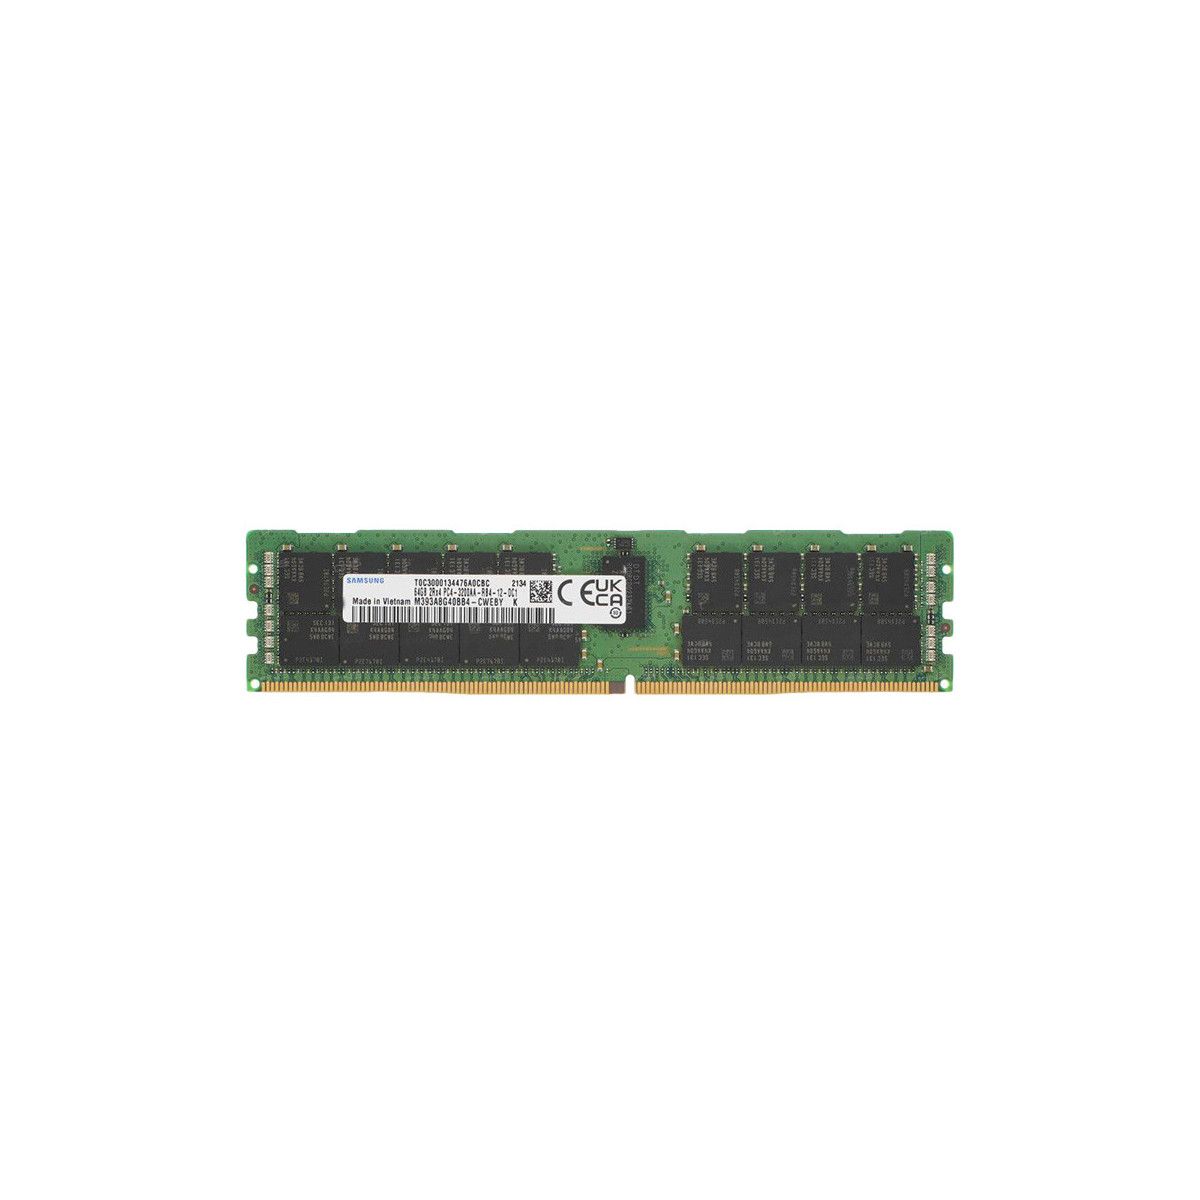 P25205-B21-MS -NO- Memstar 1x 64GB DDR4-3200 RDIMM PC4-25600R - Mem-star OEM compatibile Memoria 1 - Memstar 